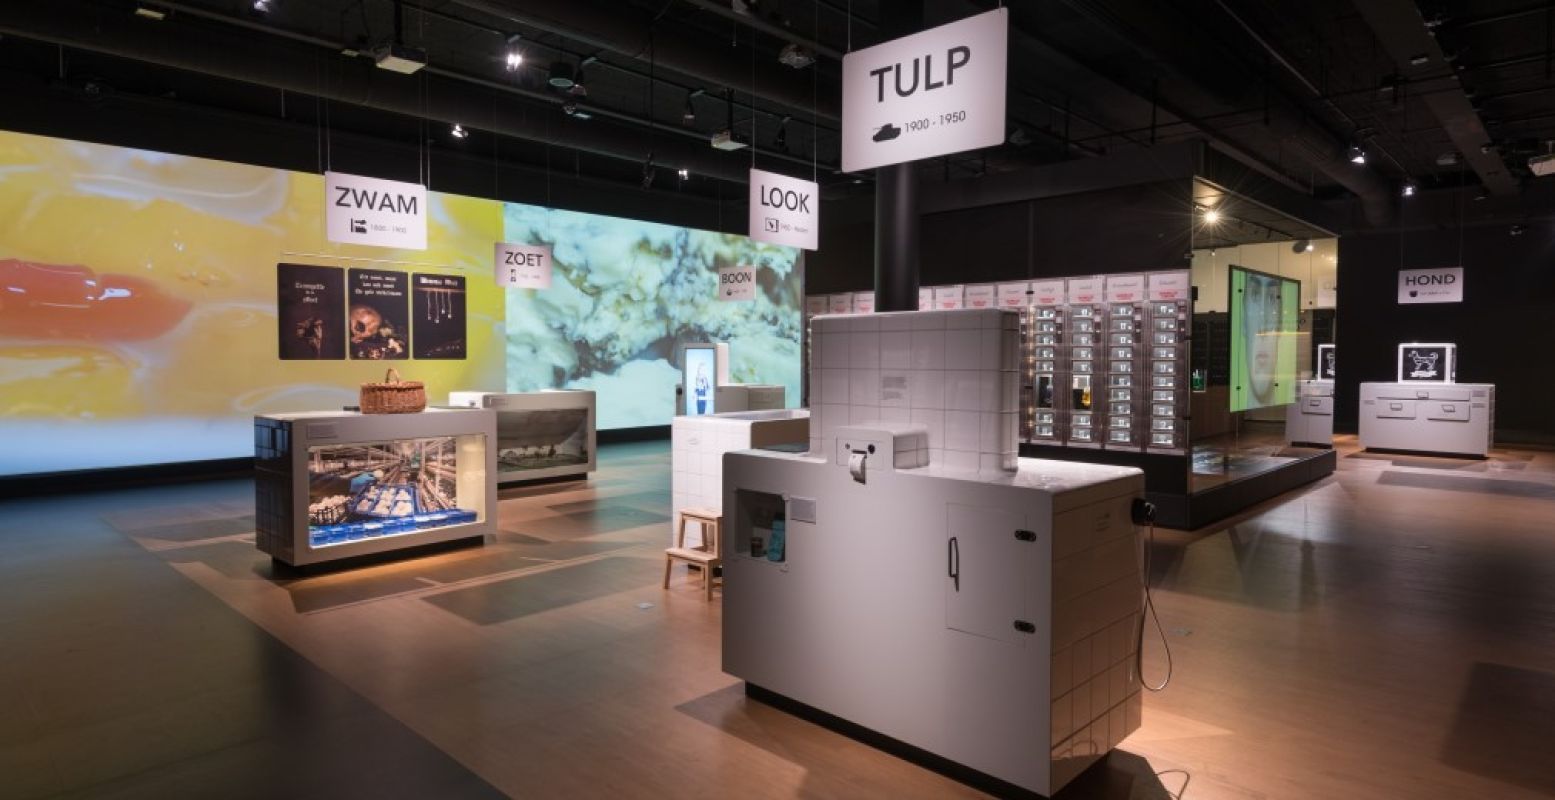 Tulp, look en zwam zijn drie van de smaken die je tegenkomt. Foto: Nederlands Openluchtmuseum